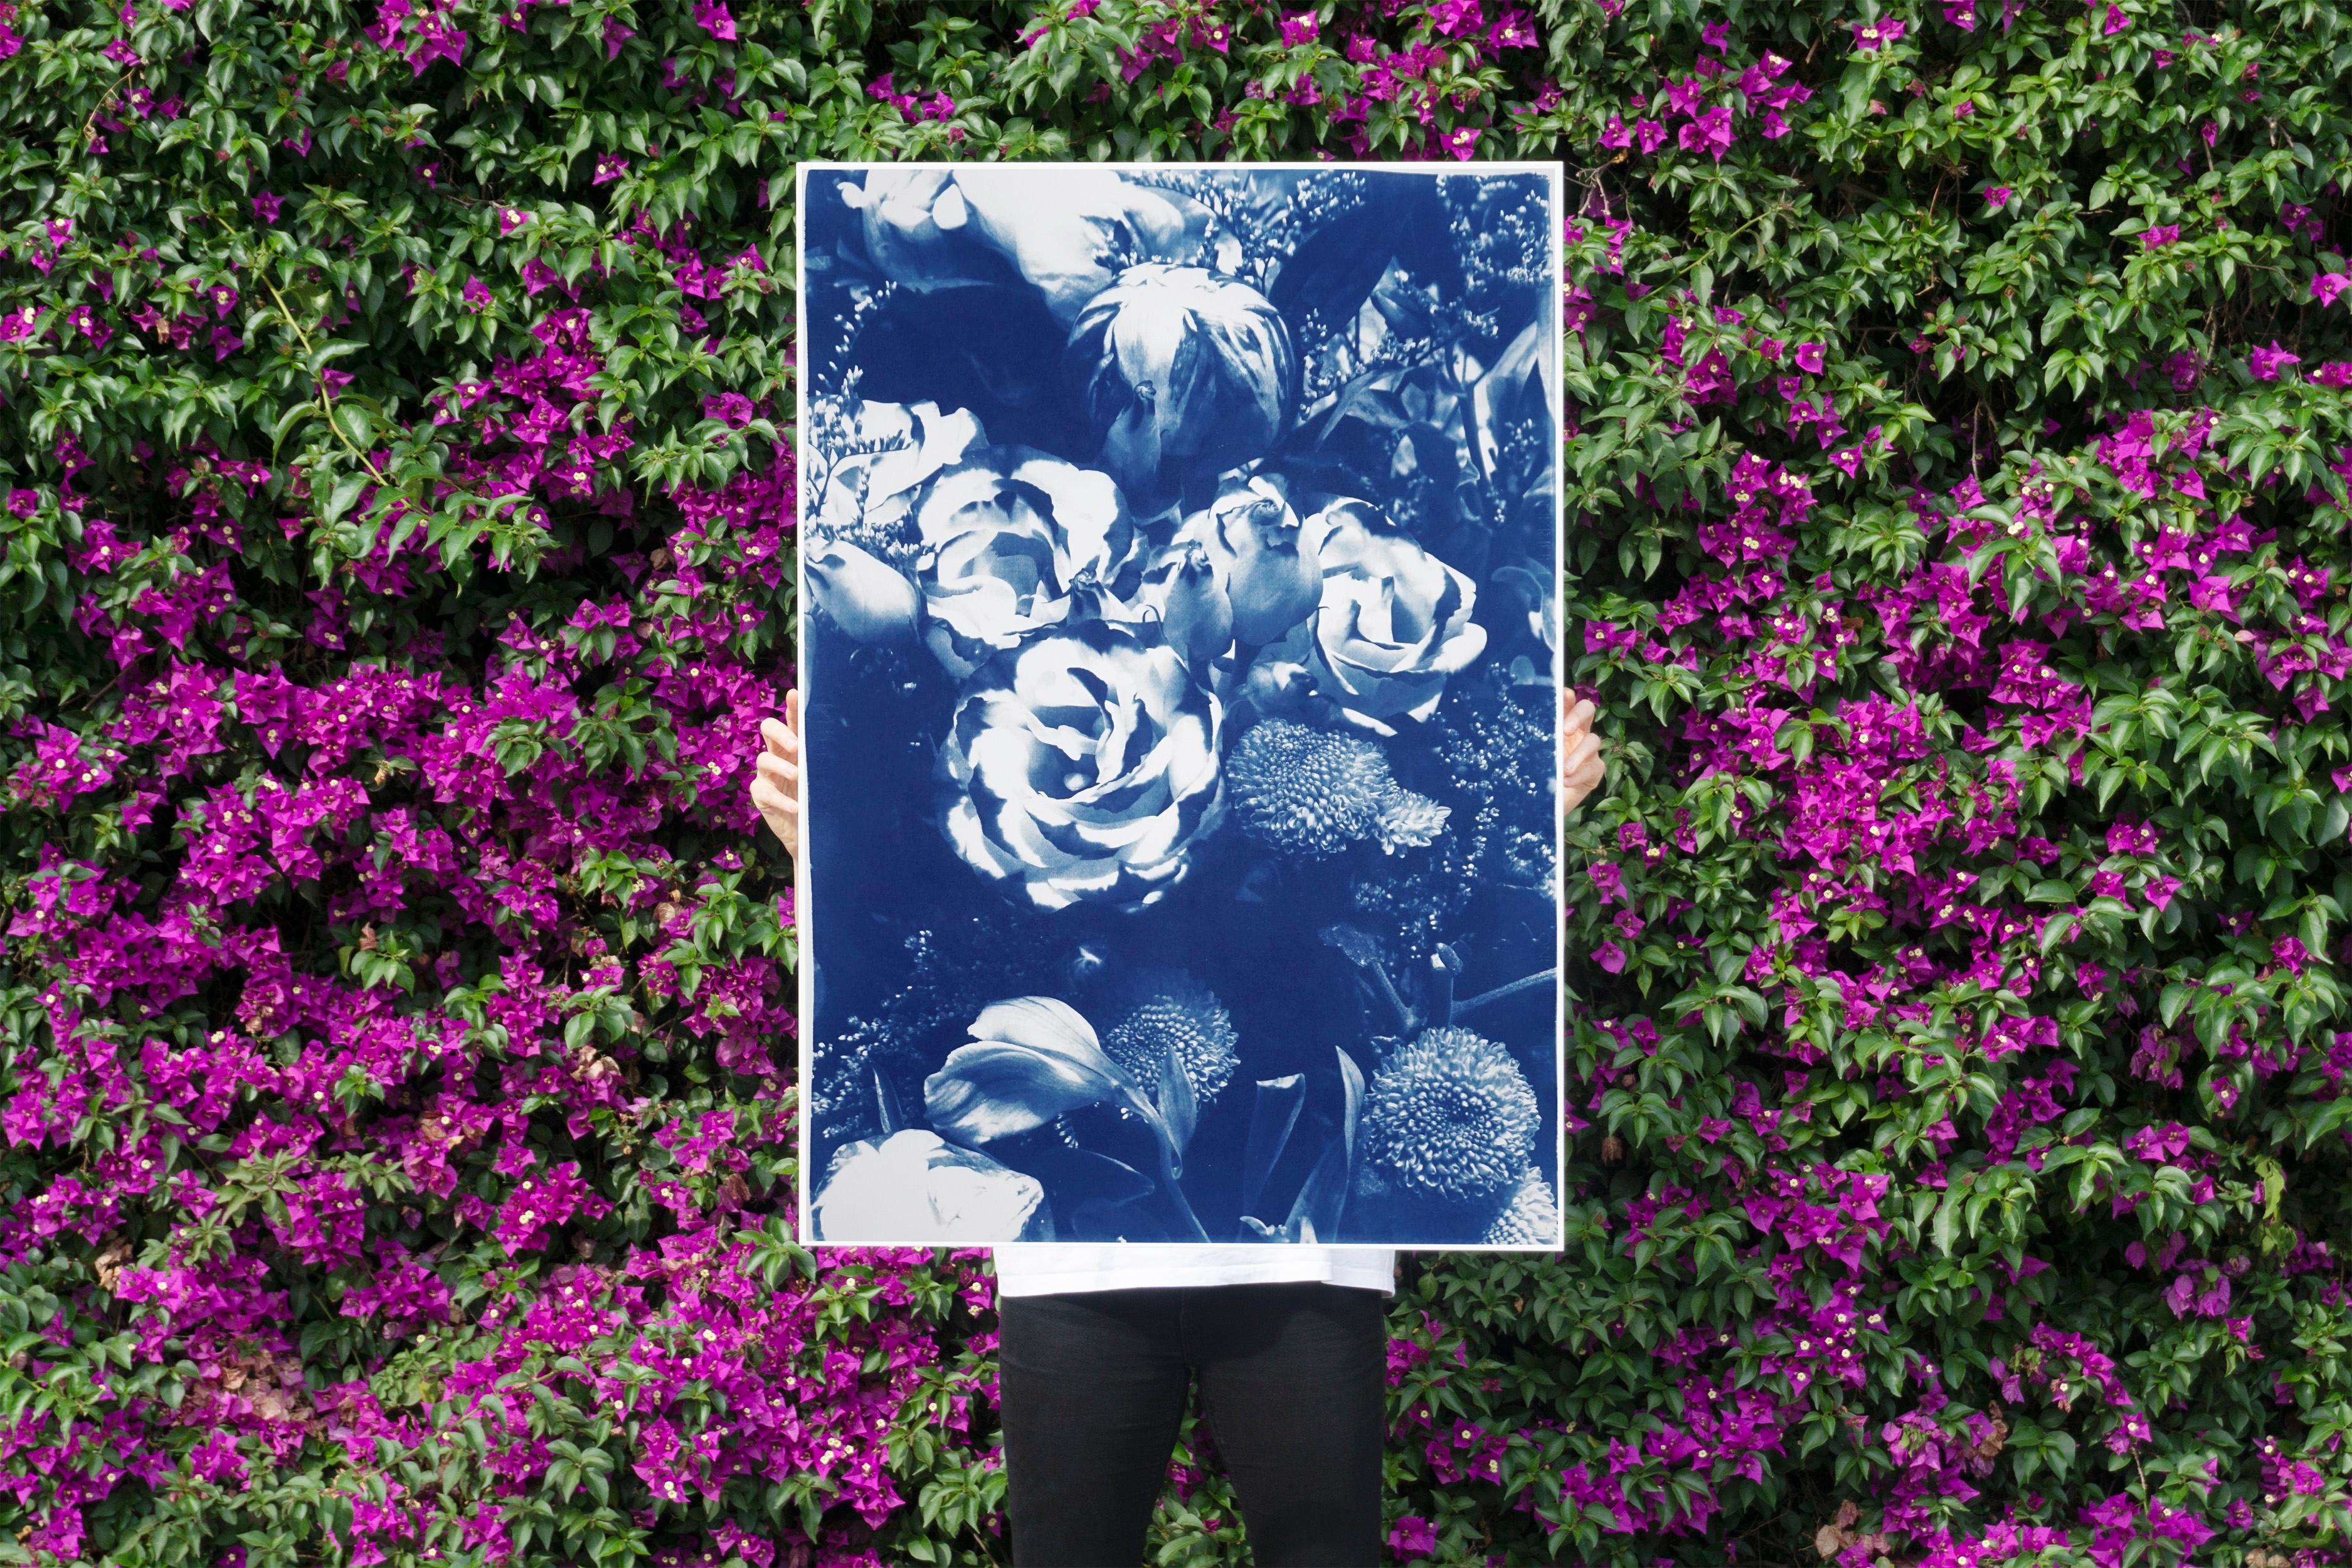 Il s'agit d'un cyanotype exclusif imprimé à la main en édition limitée d'un magnifique bouquet bleu. 

Détails :
+ Titre : Bouquet de fleurs bleues
+ Année : 2022
+ Taille de l'édition : 100
+ Tampon et certificat d'authenticité fournis.
+ Mesures :